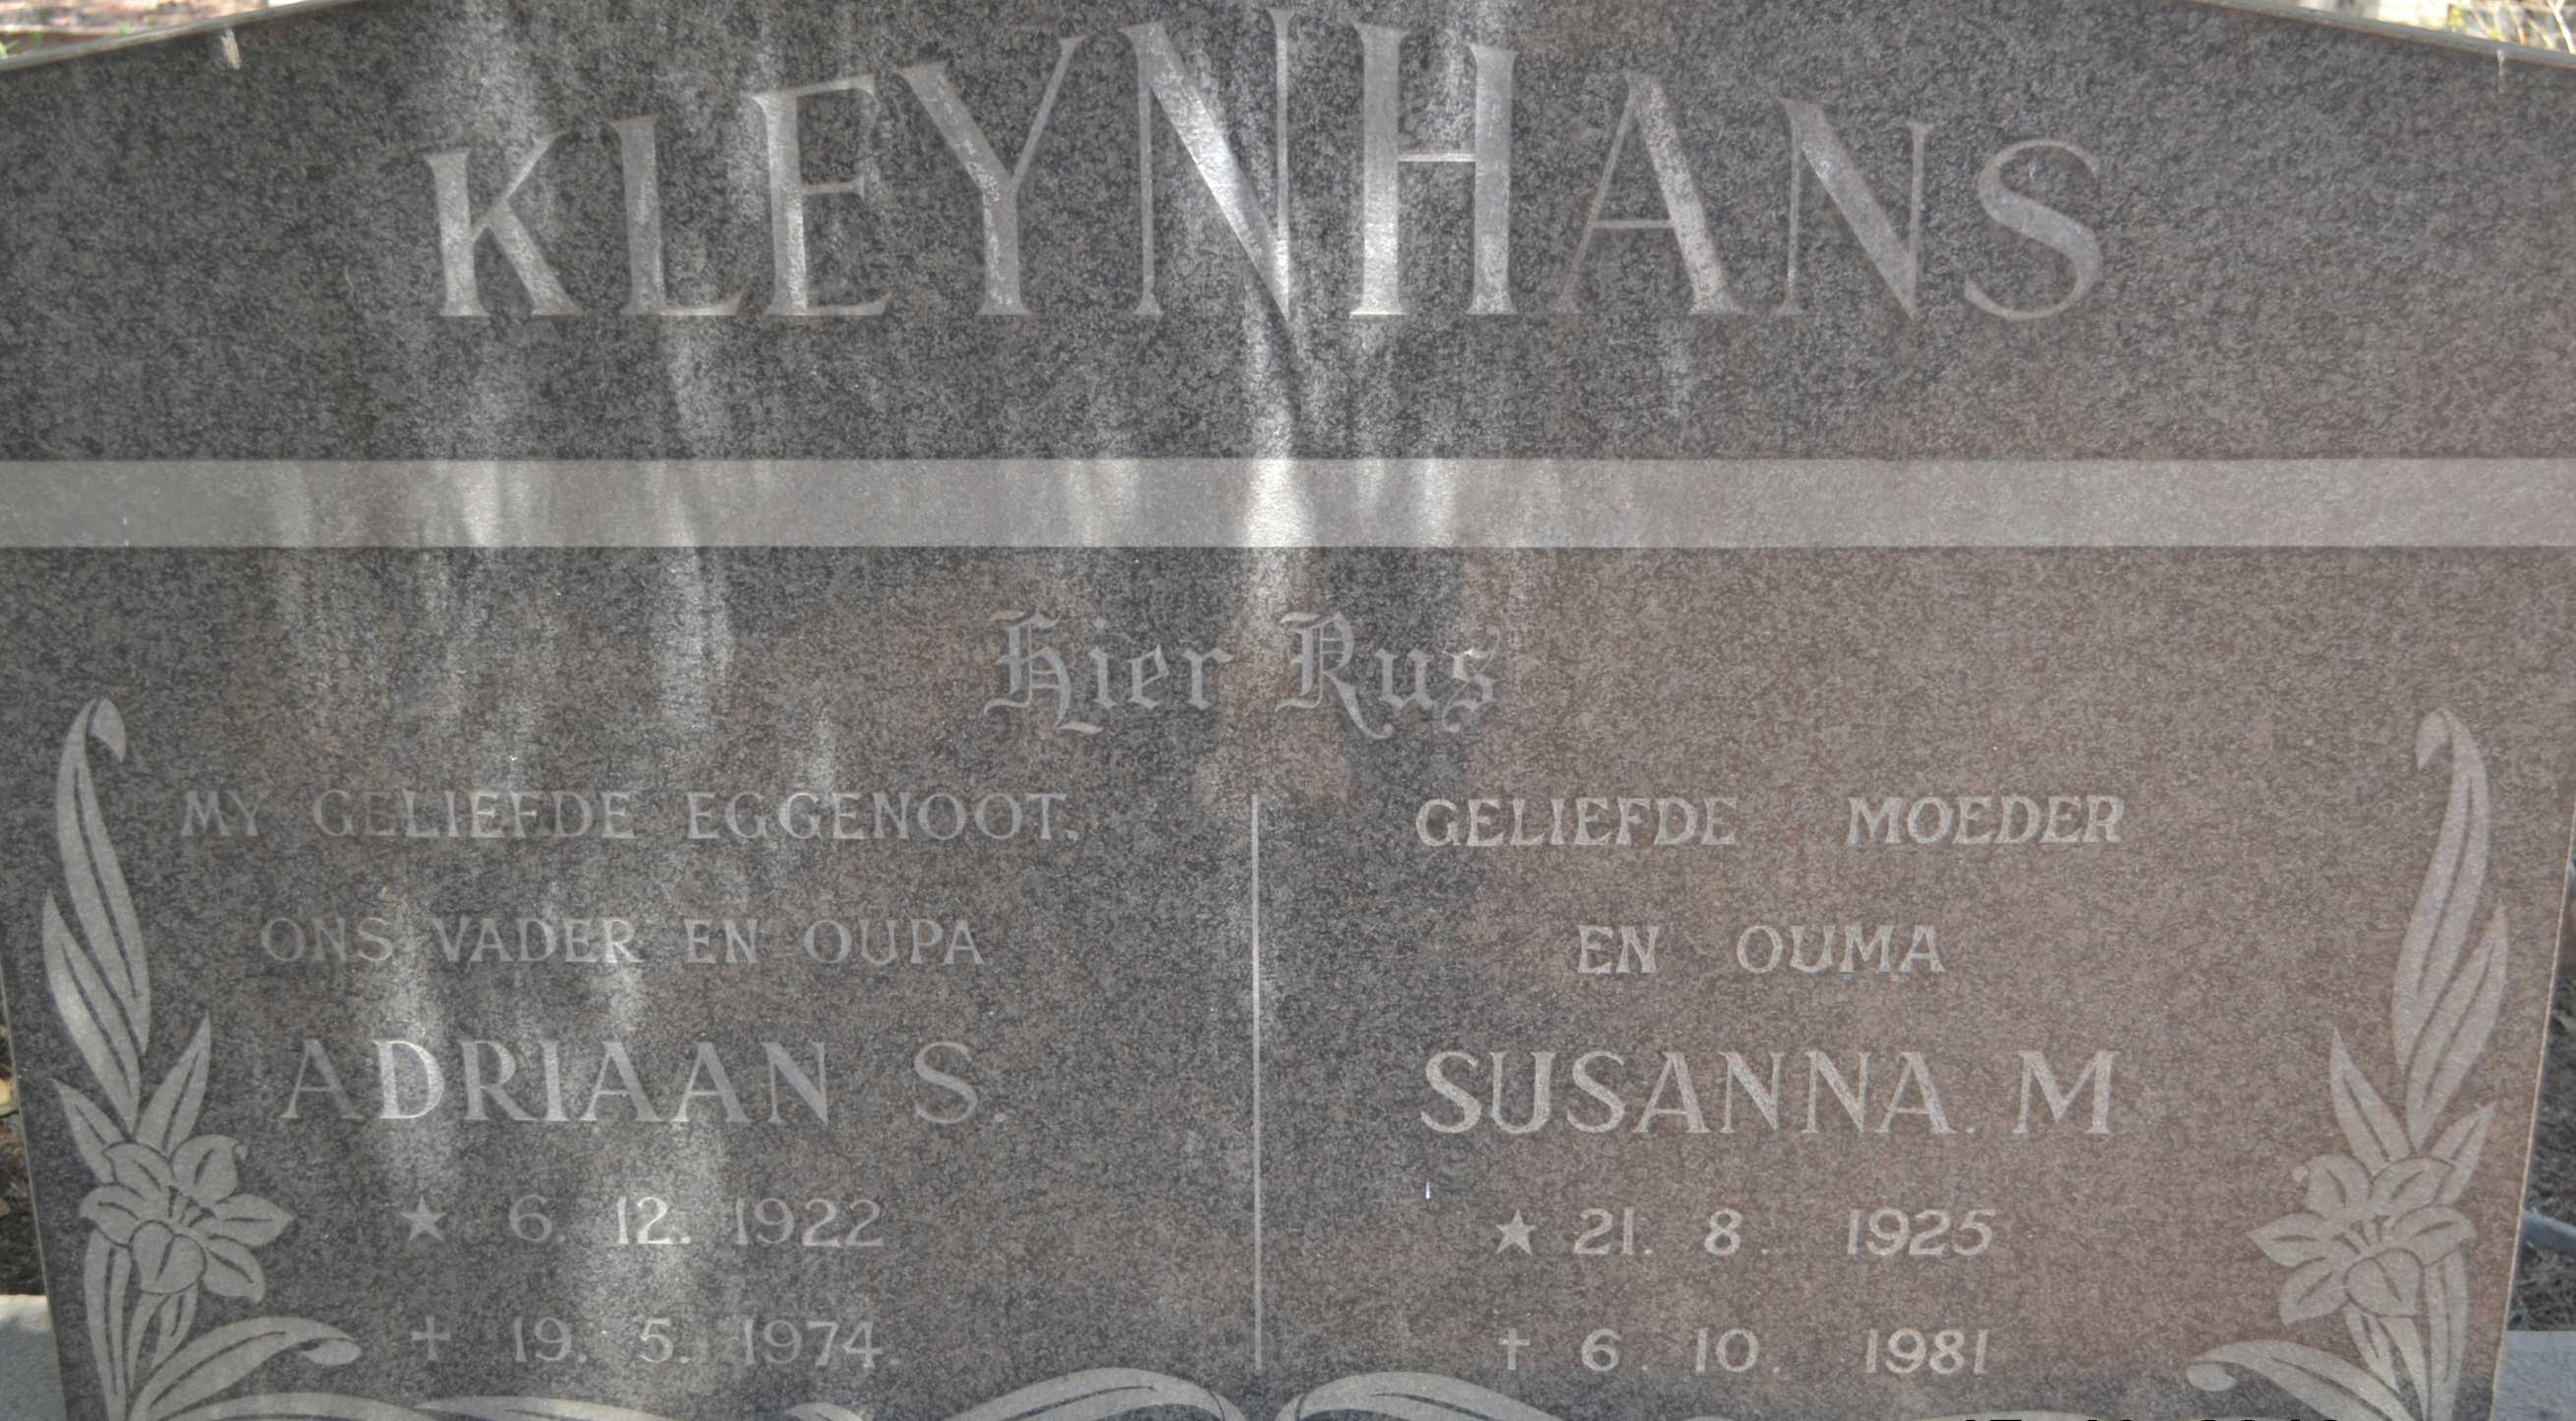 KLEYNHANS Adriaan S. 1922-1974 & Susanna M. 1925-1981